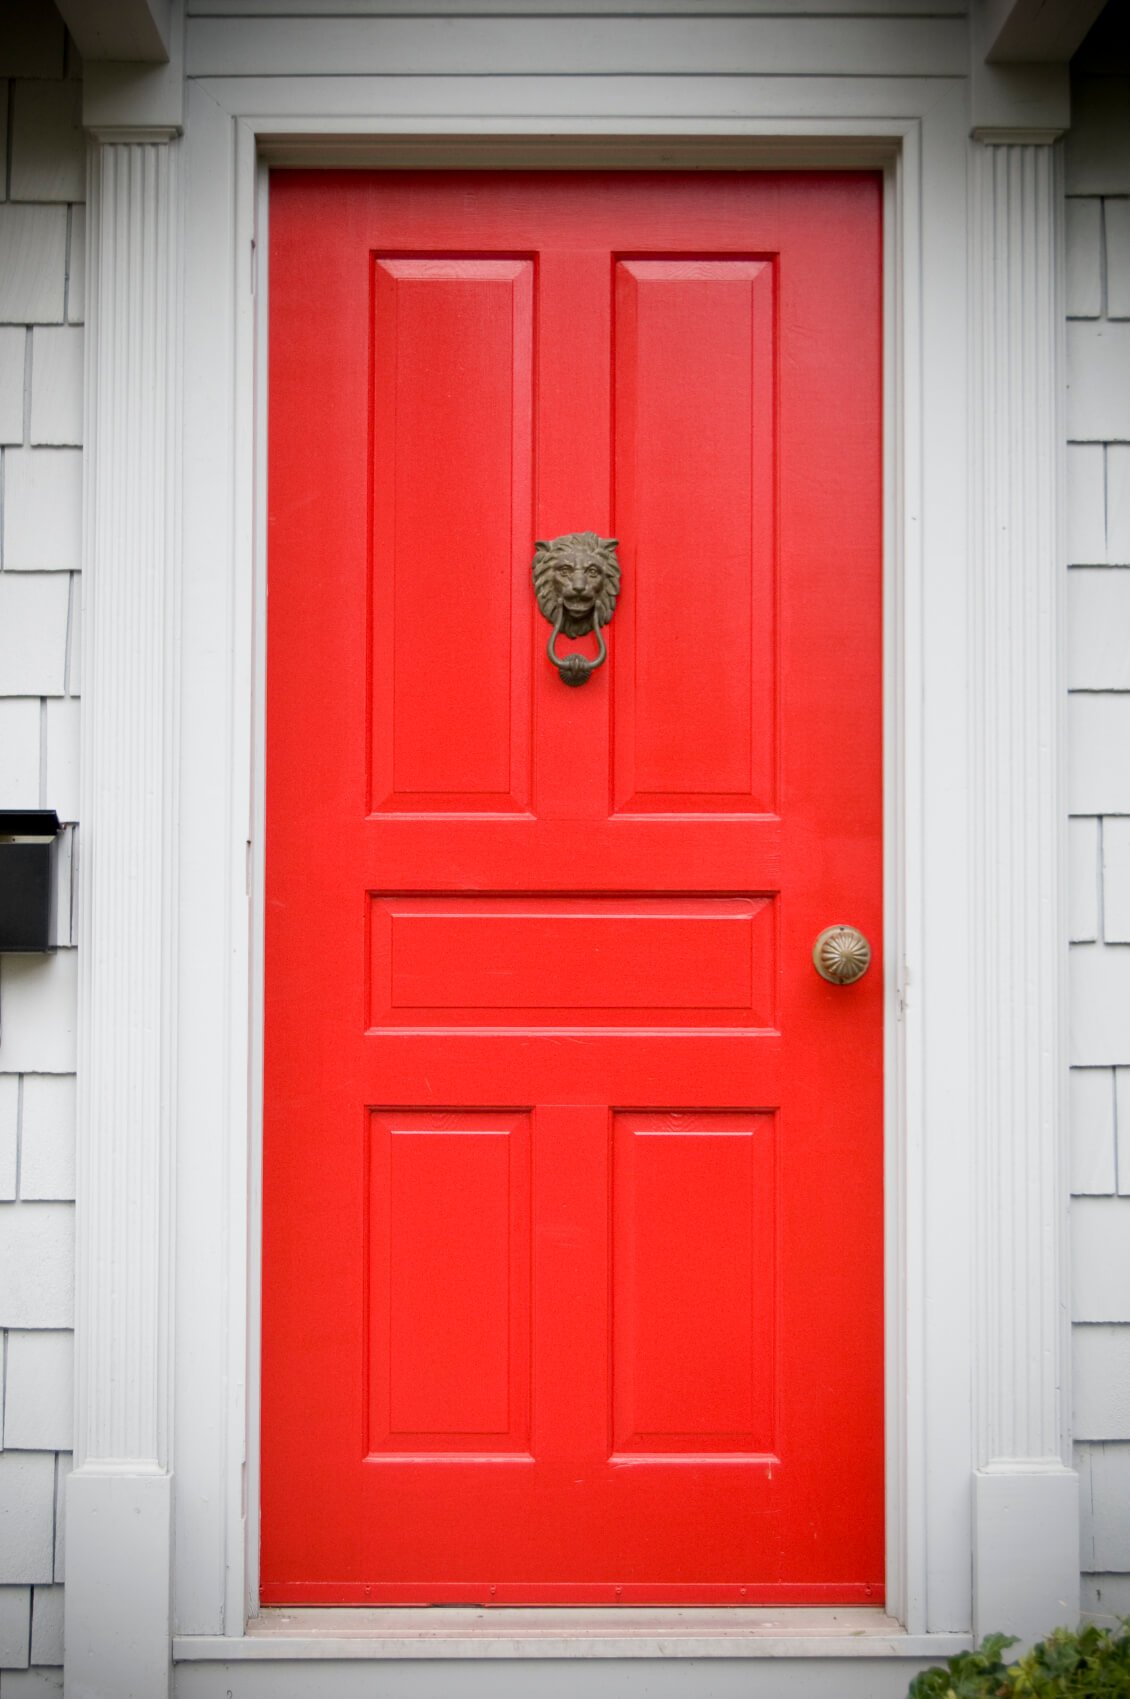 米白色的造型和框架支撑着这扇亮红色的门，它有五个矩形面板，并有一个青铜门环和一个青铜门把手。门的左边有一个固定在墙上的黑色邮箱。